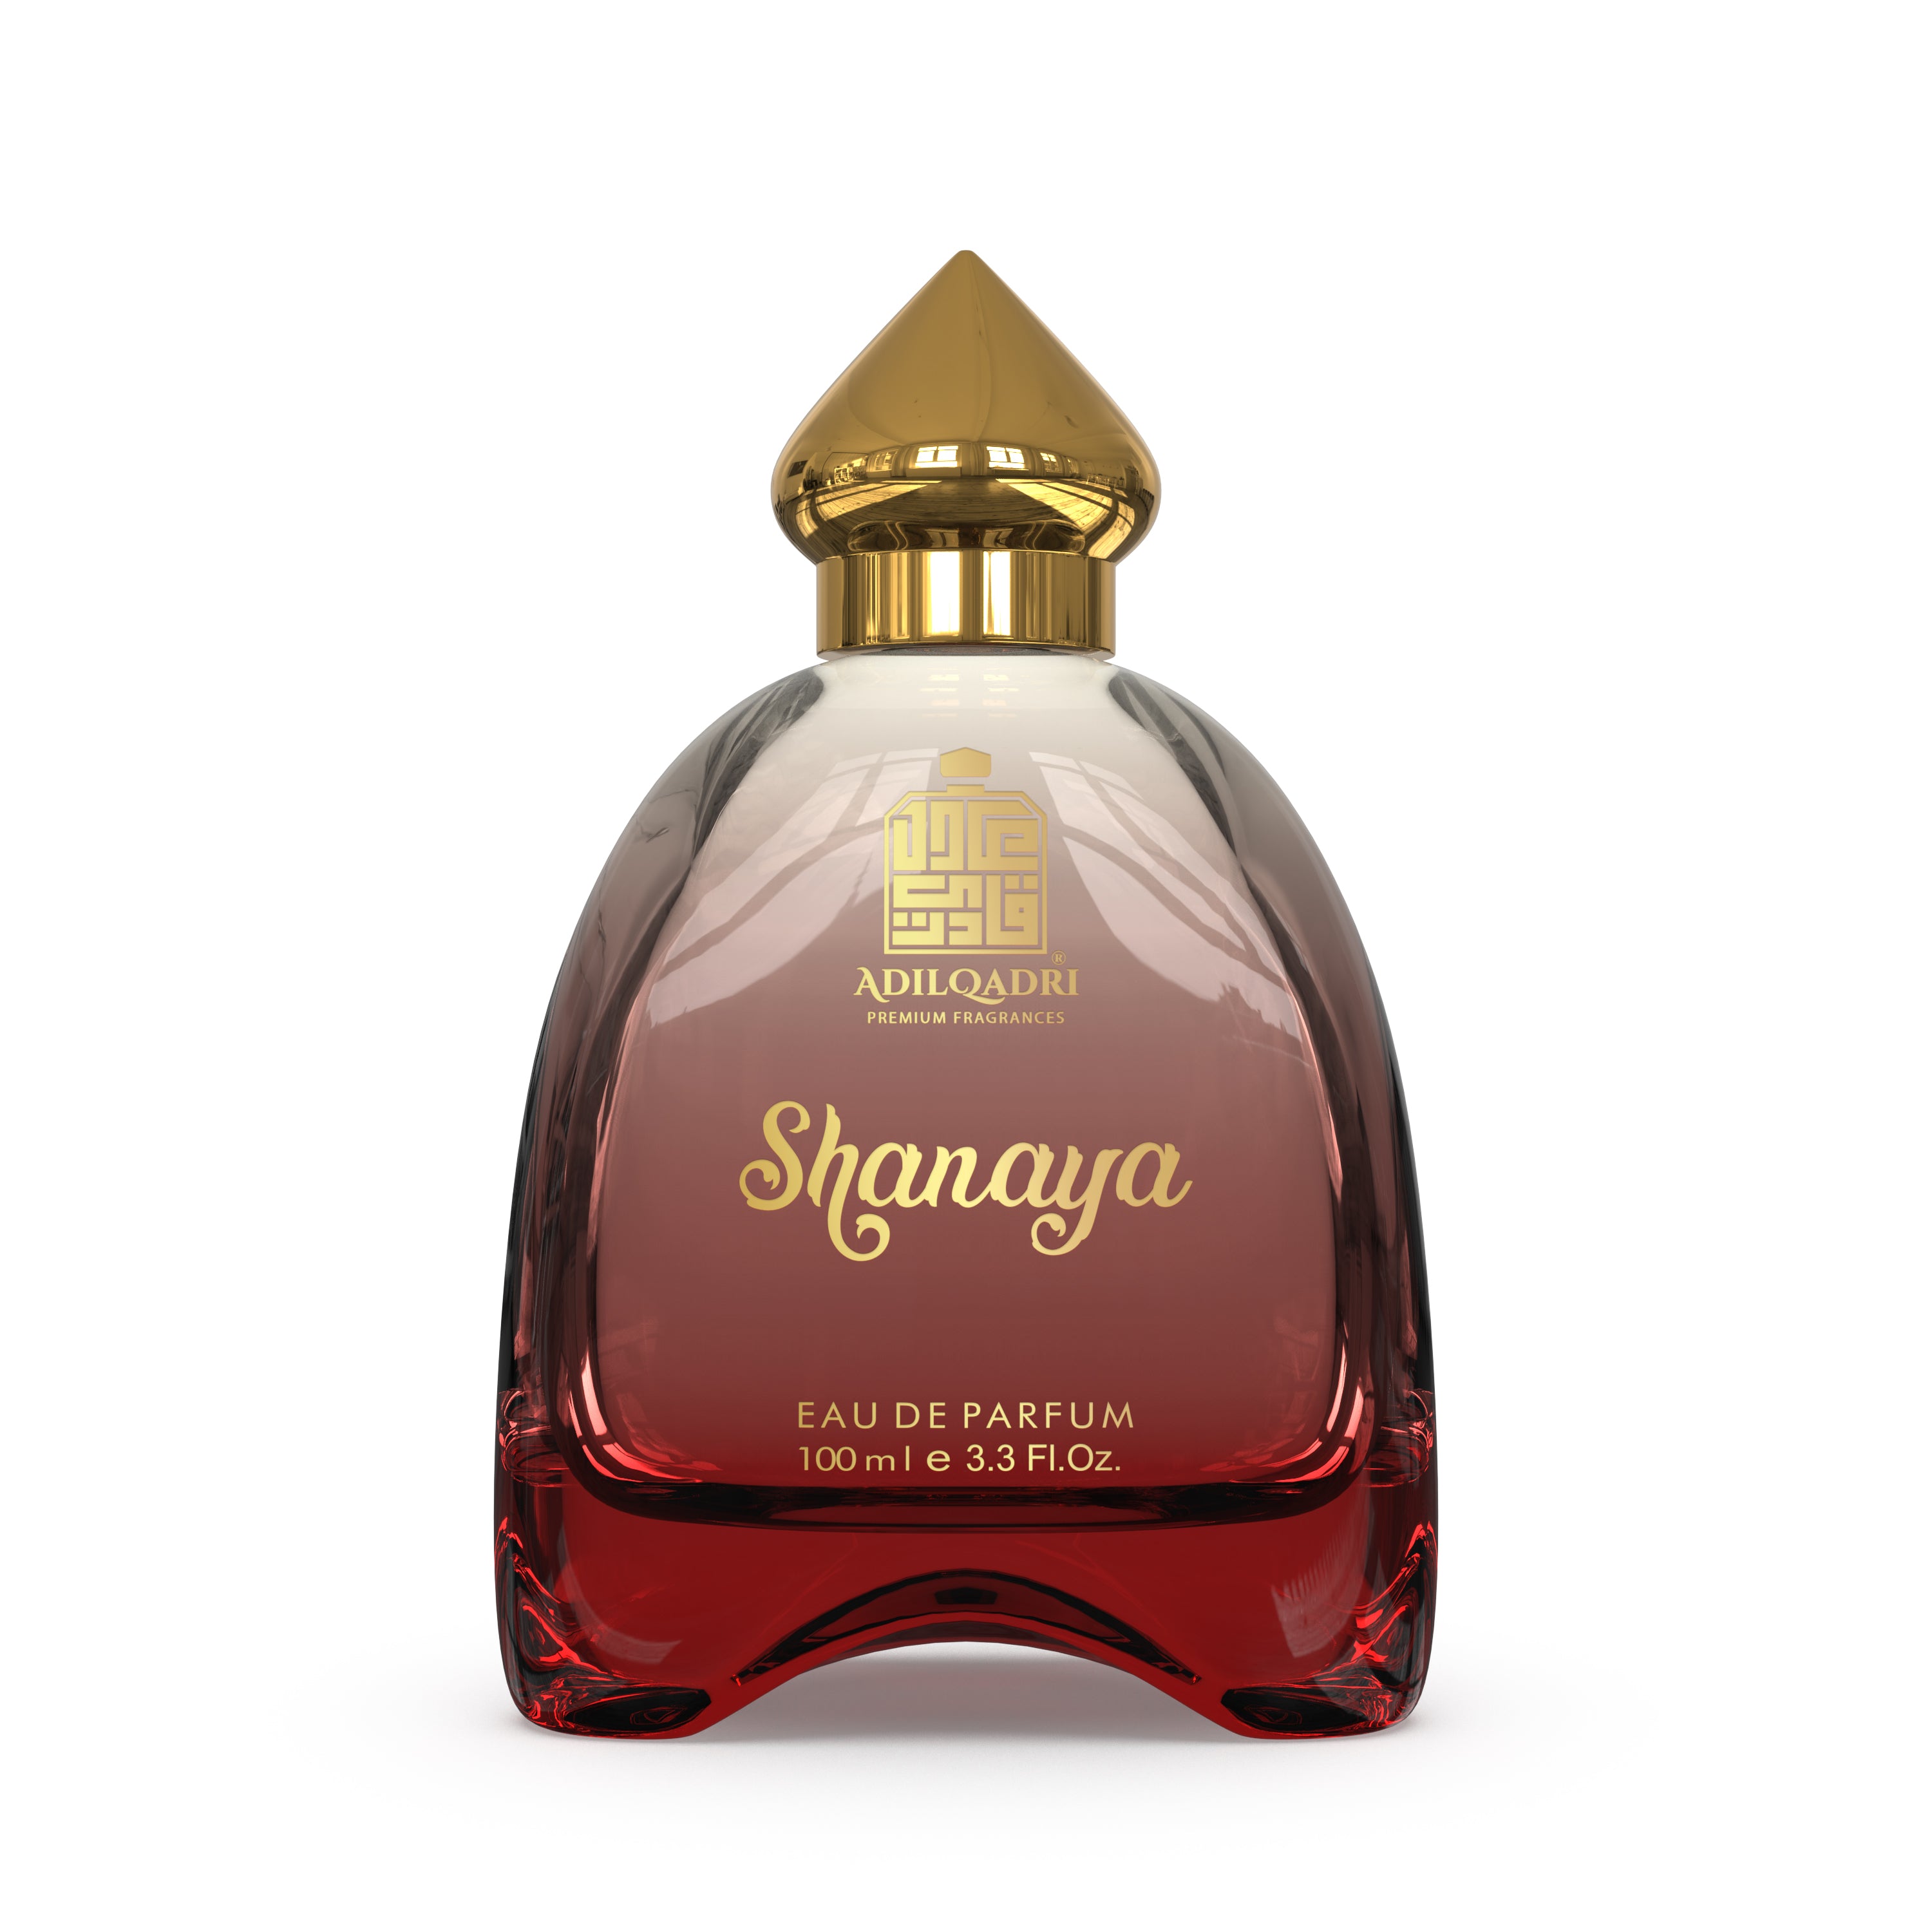 Shanaya Perfume Spray